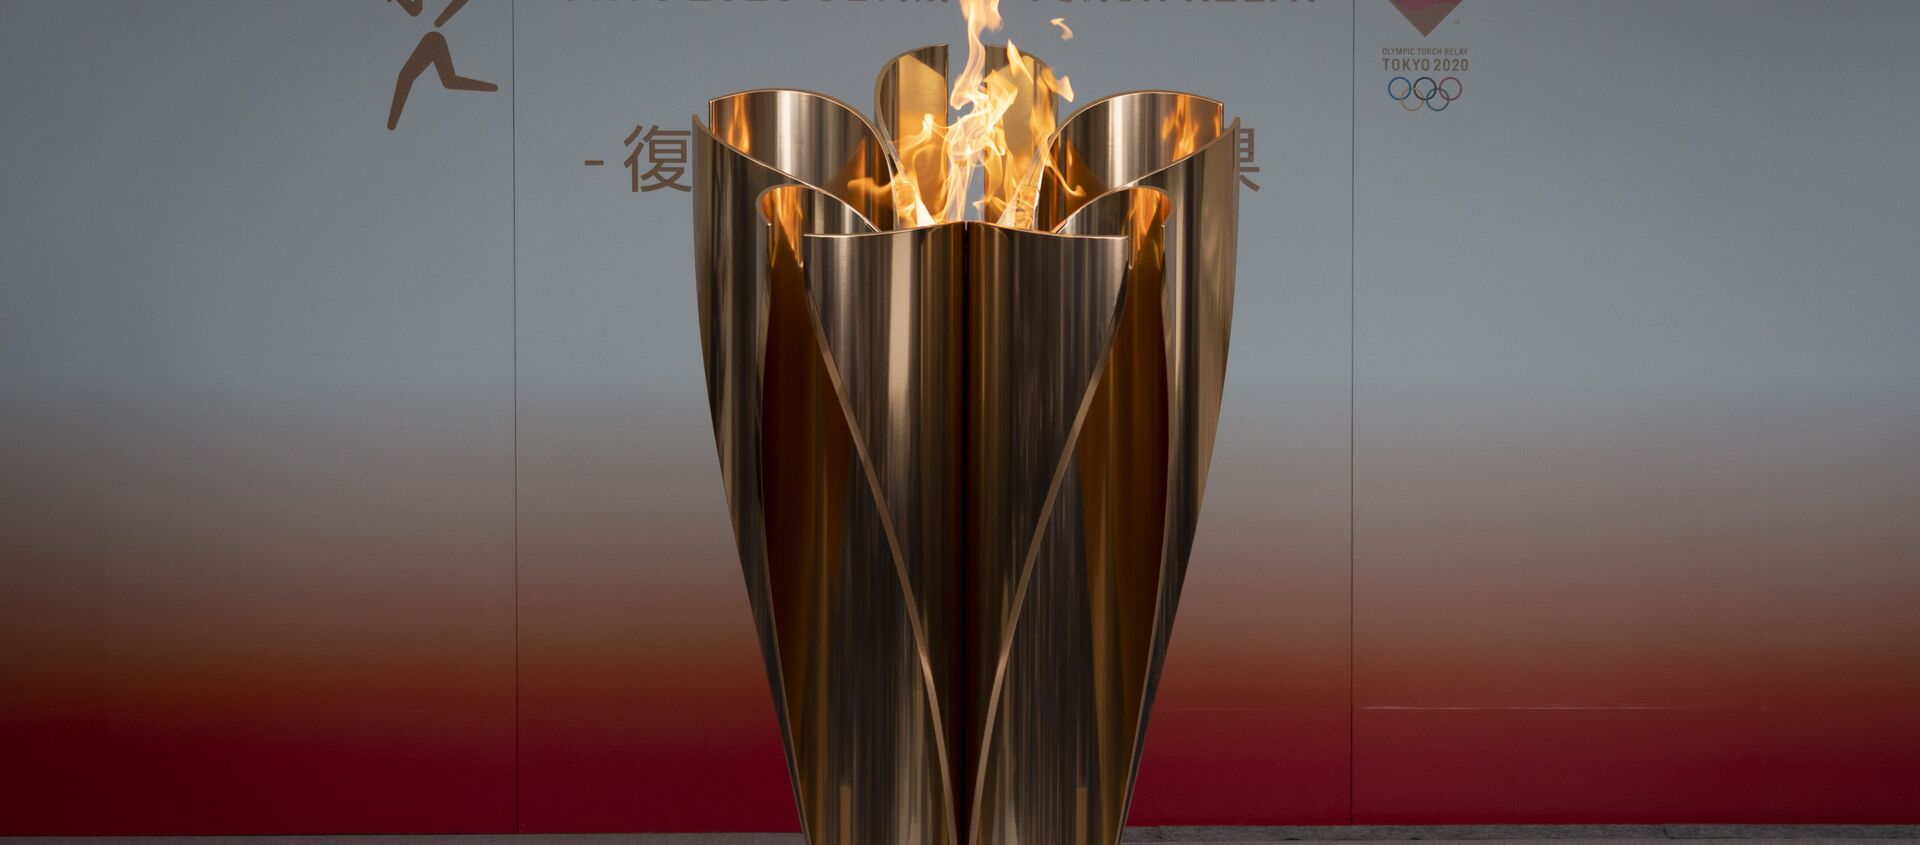 Ngọn lửa Olympic ở thành phố Fukushima, Nhật Bản. - Sputnik Việt Nam, 1920, 26.03.2021